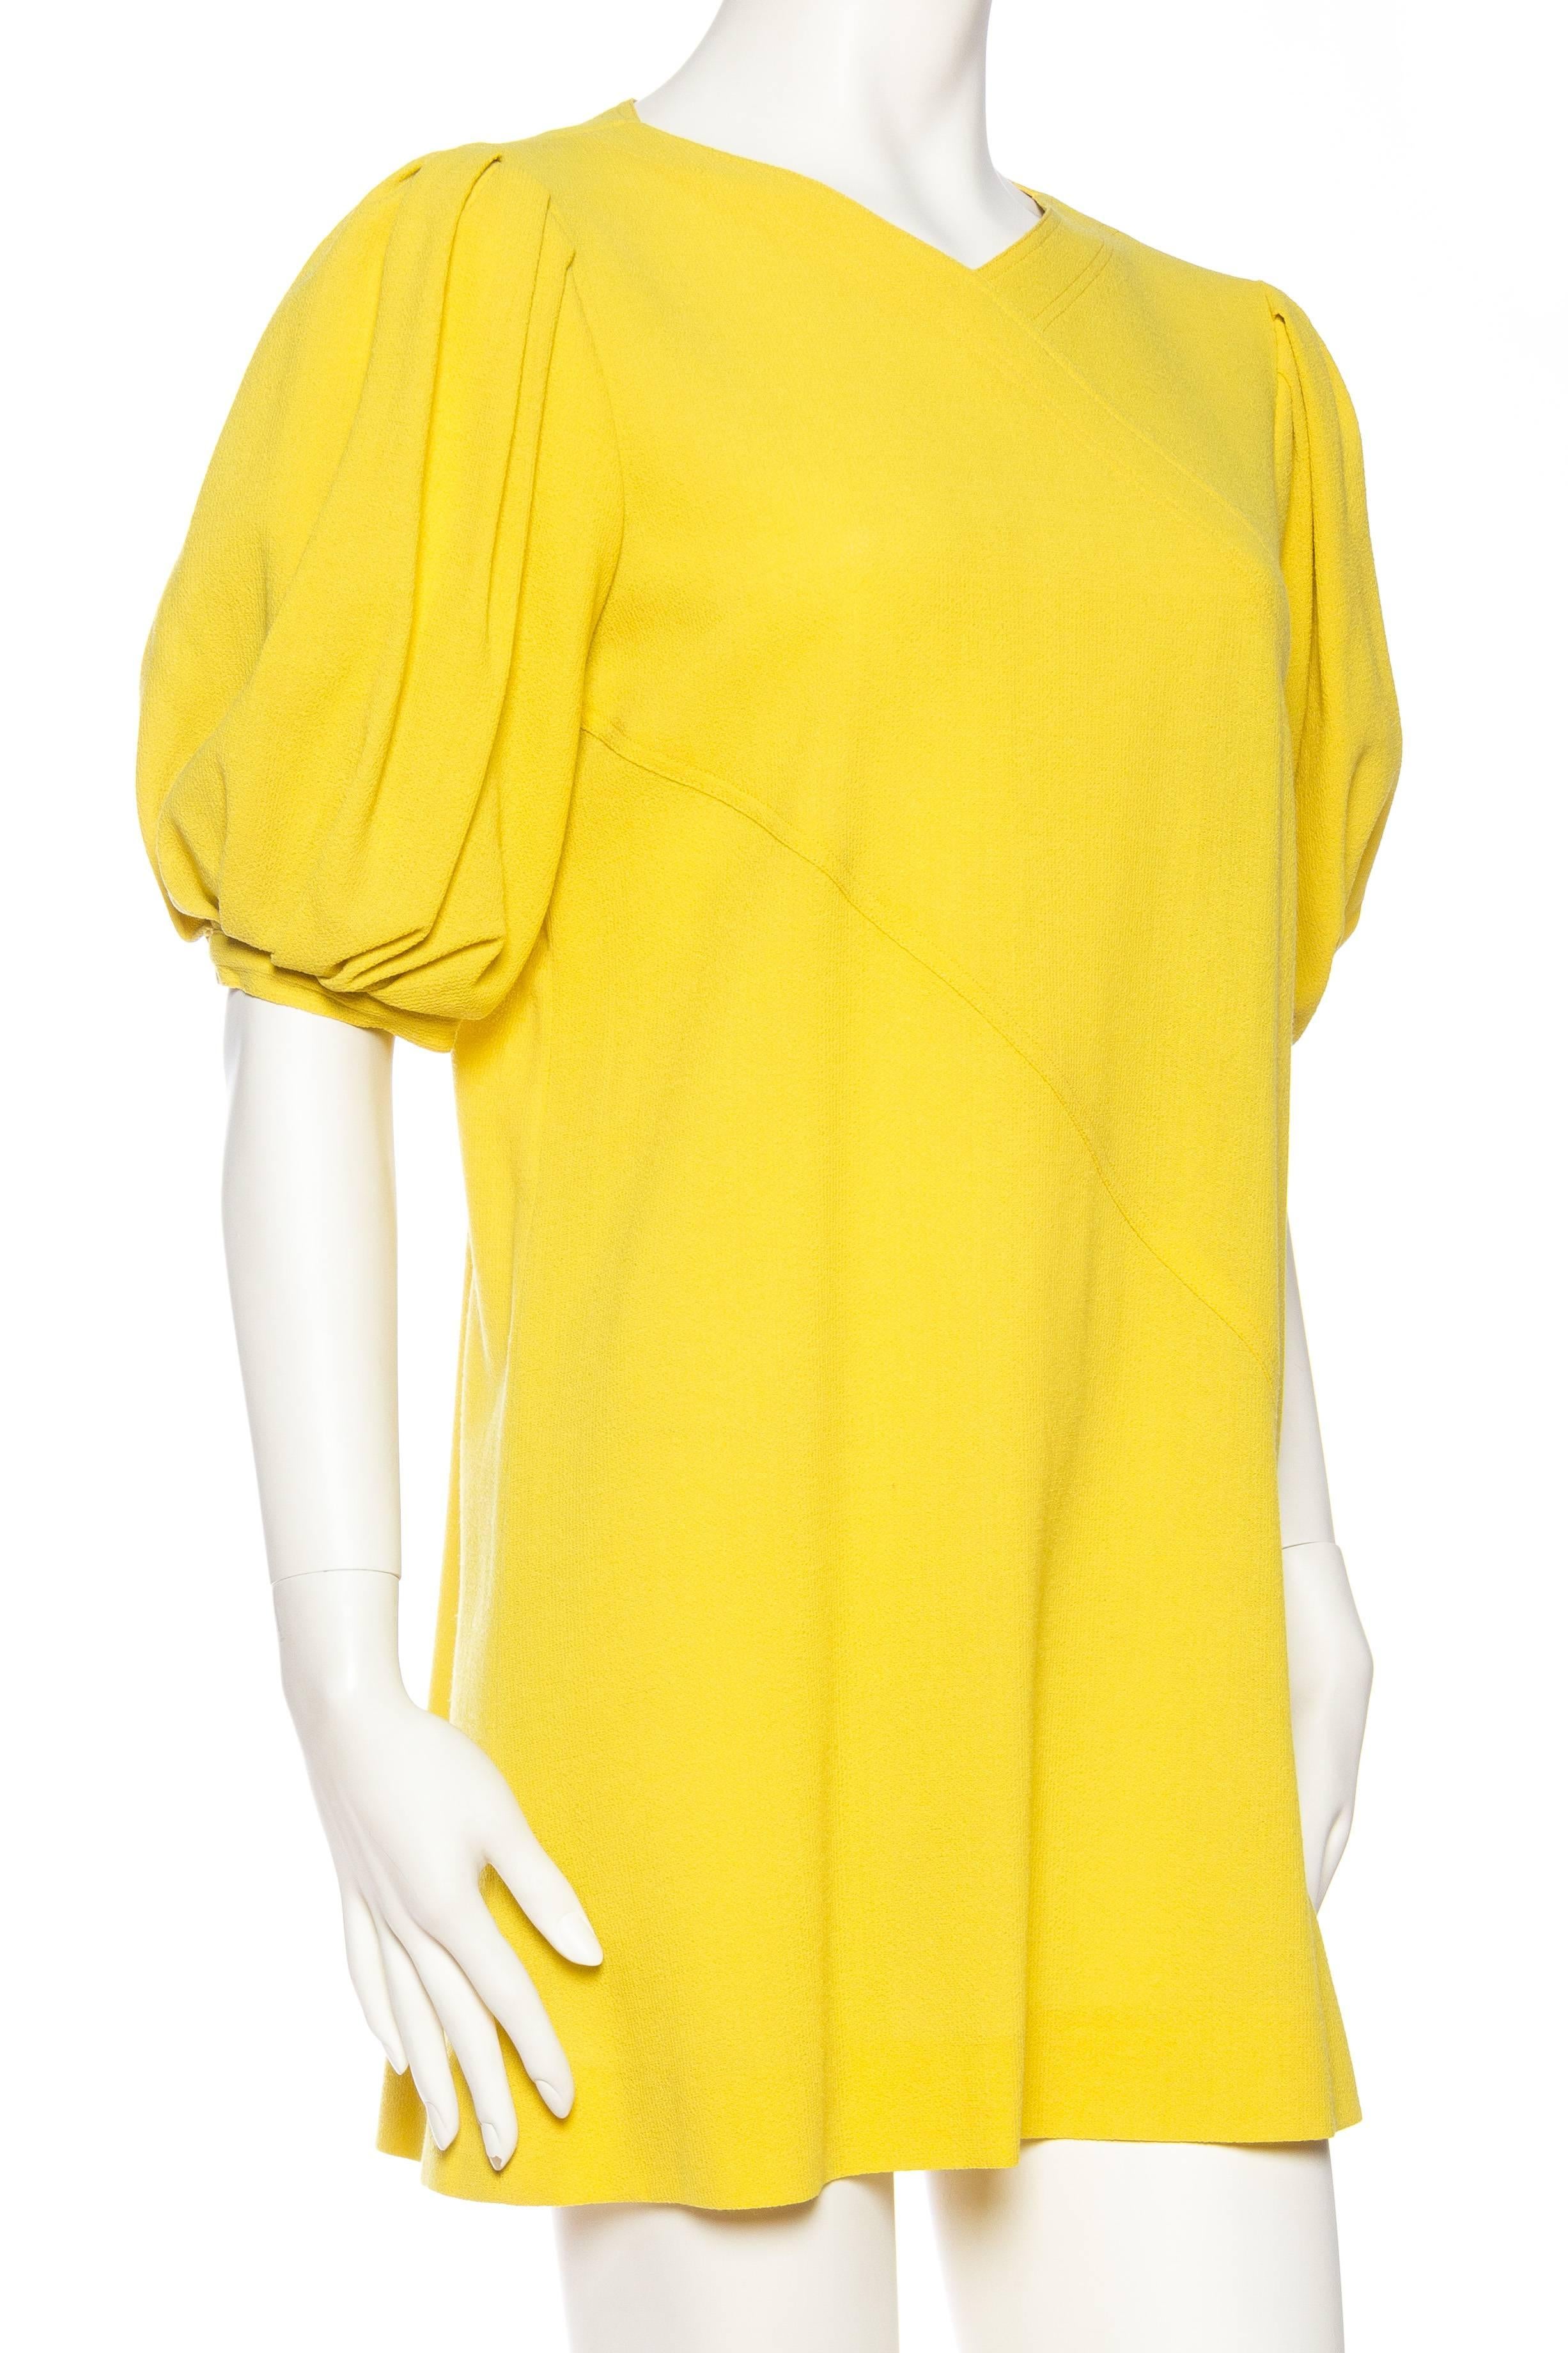 Women's Jean Muir Lightweight Mod Yellow Dress